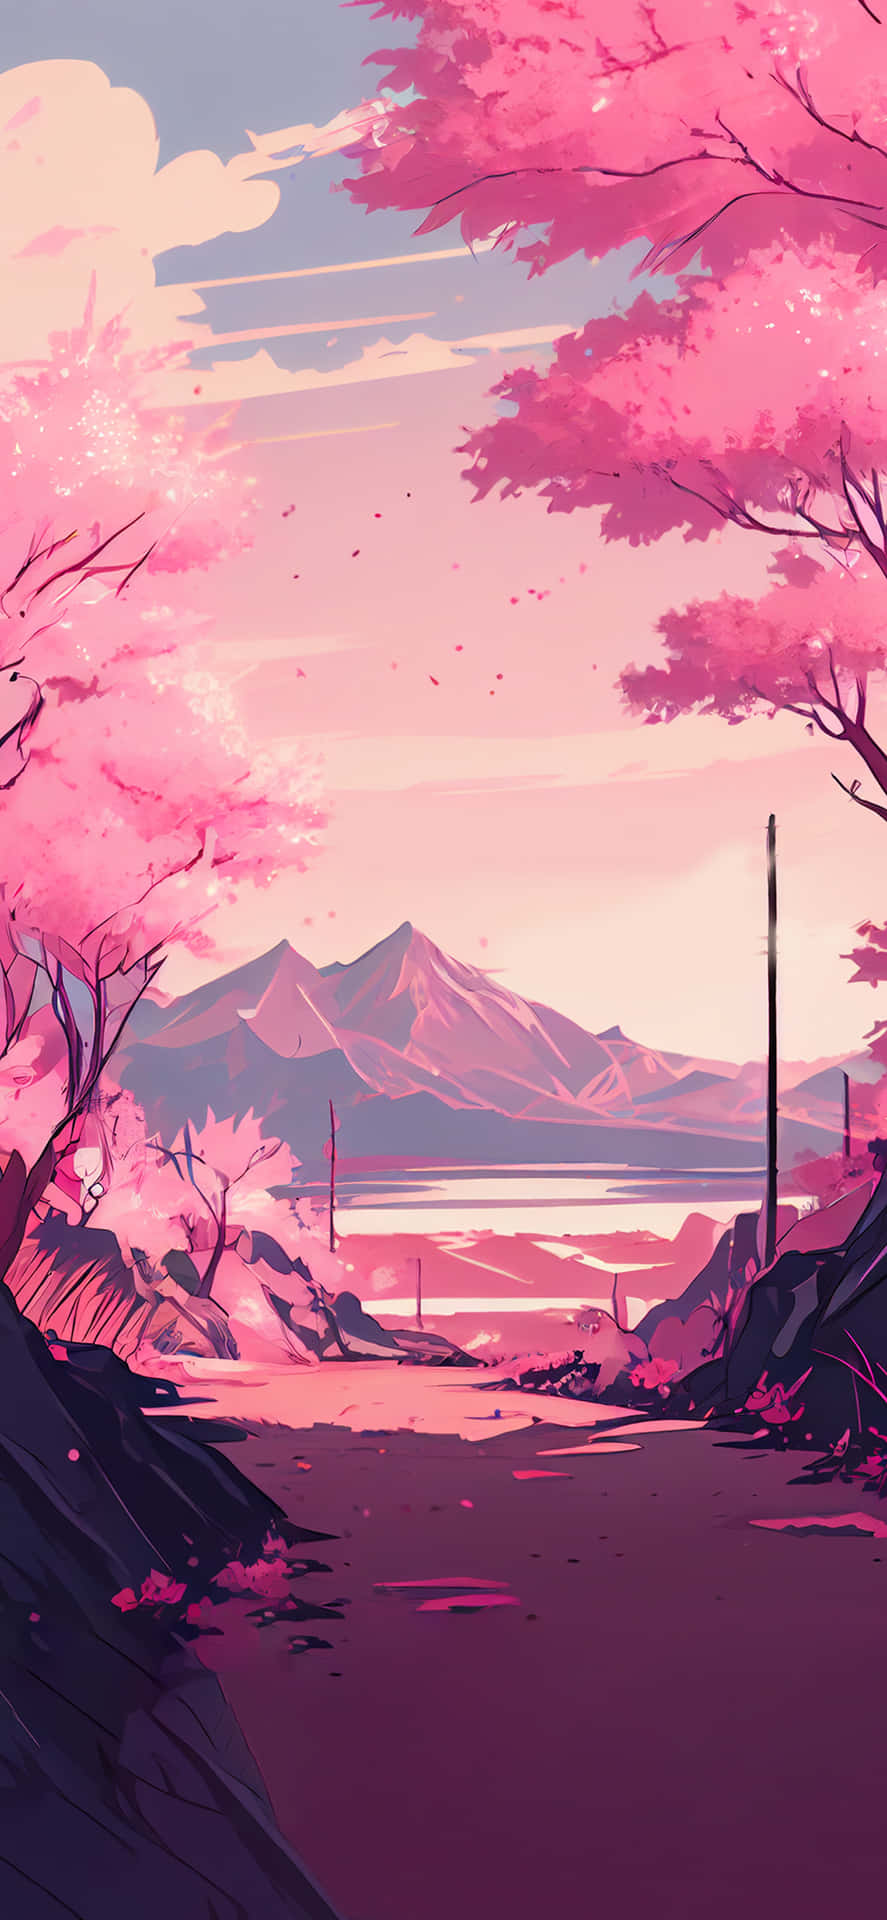 Download Sakura Background | Wallpapers.com